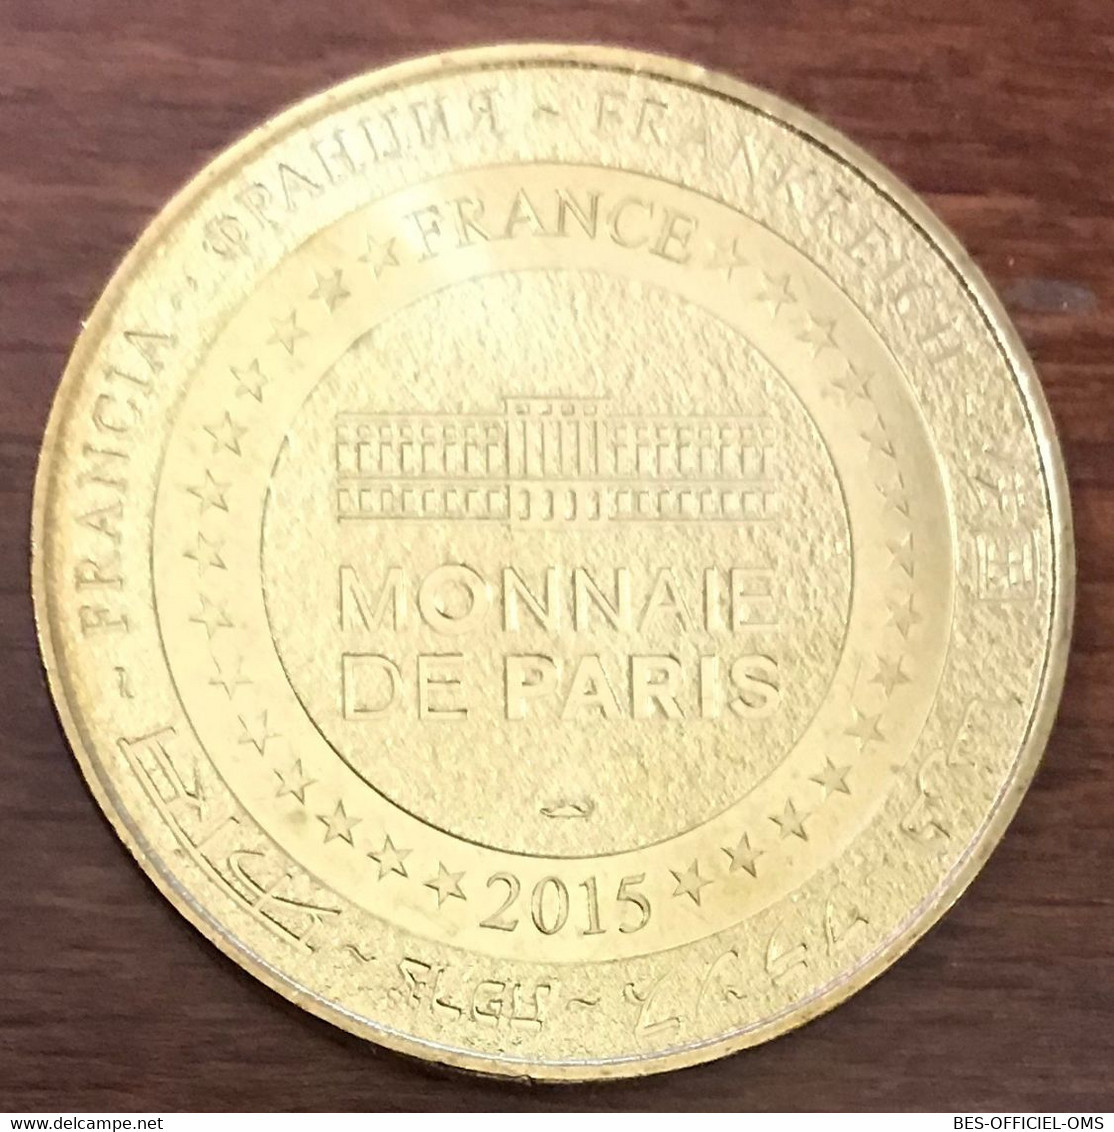 30 LE GRAU DU ROI SEAQUARIUM TORTUE MARINE MDP 2015 MEDAILLE MONNAIE DE PARIS JETON TOURISTIQUE MEDALS COINS TOKENS - 2015